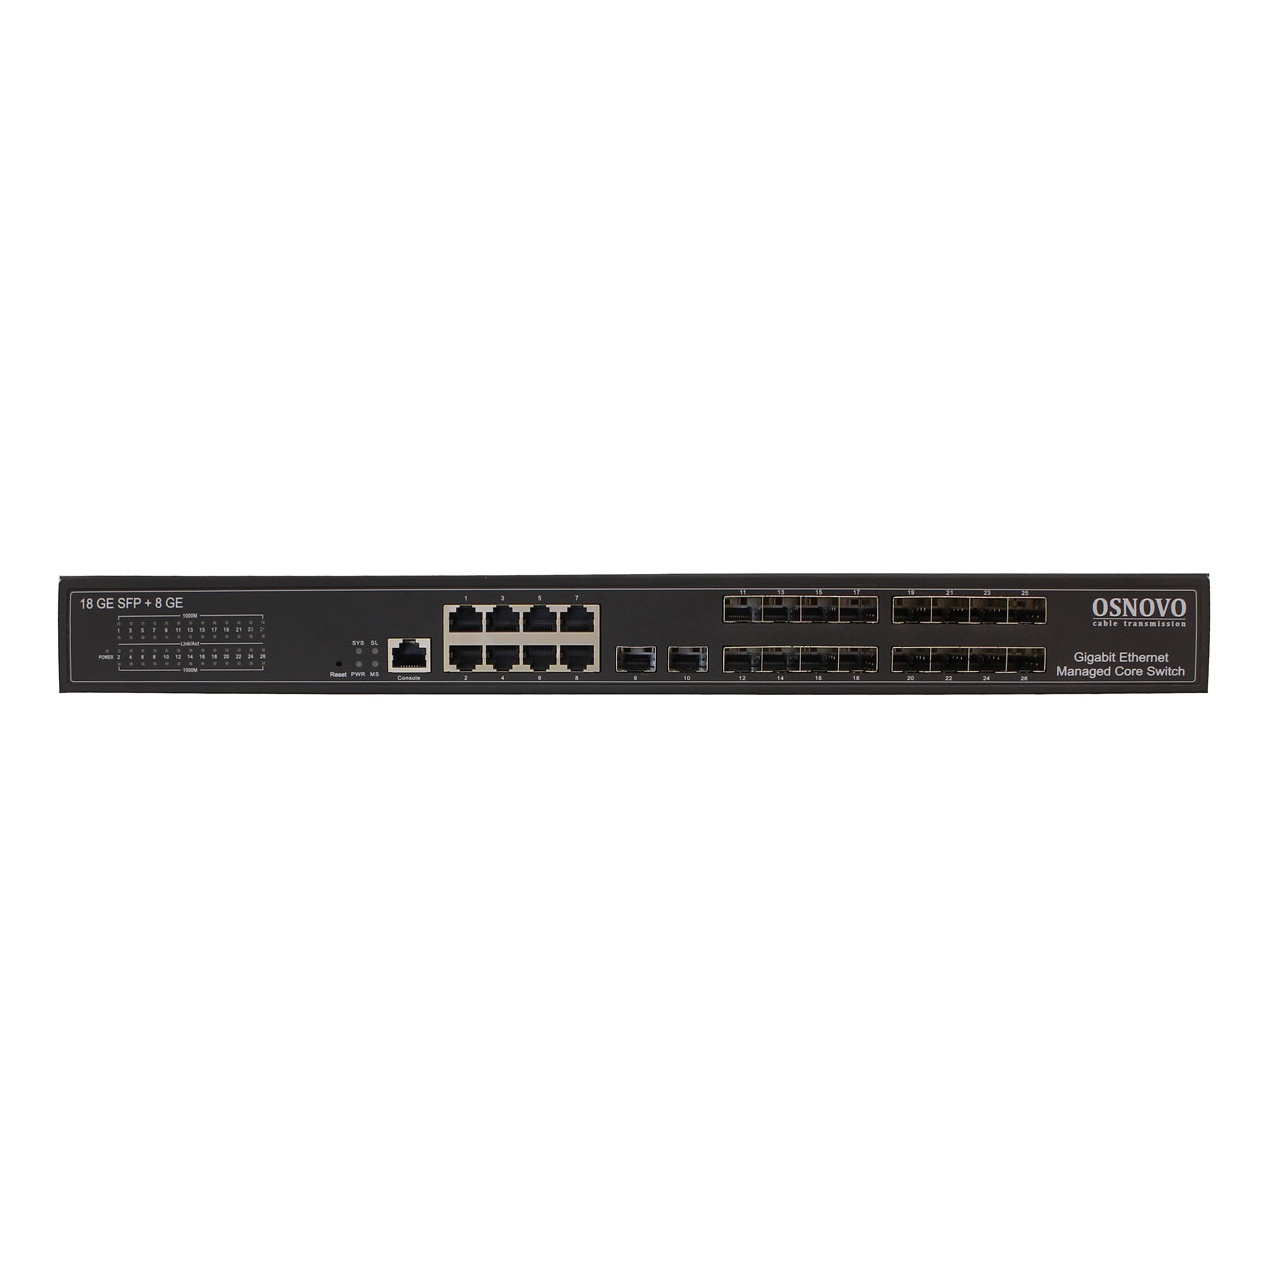 OSNOVO SW-70818/L2 SW-70818/L2 Управляемый L2+ коммутатор Gigabit Ethernet на 18 x GE SFP + 8 x GE RJ45 портов